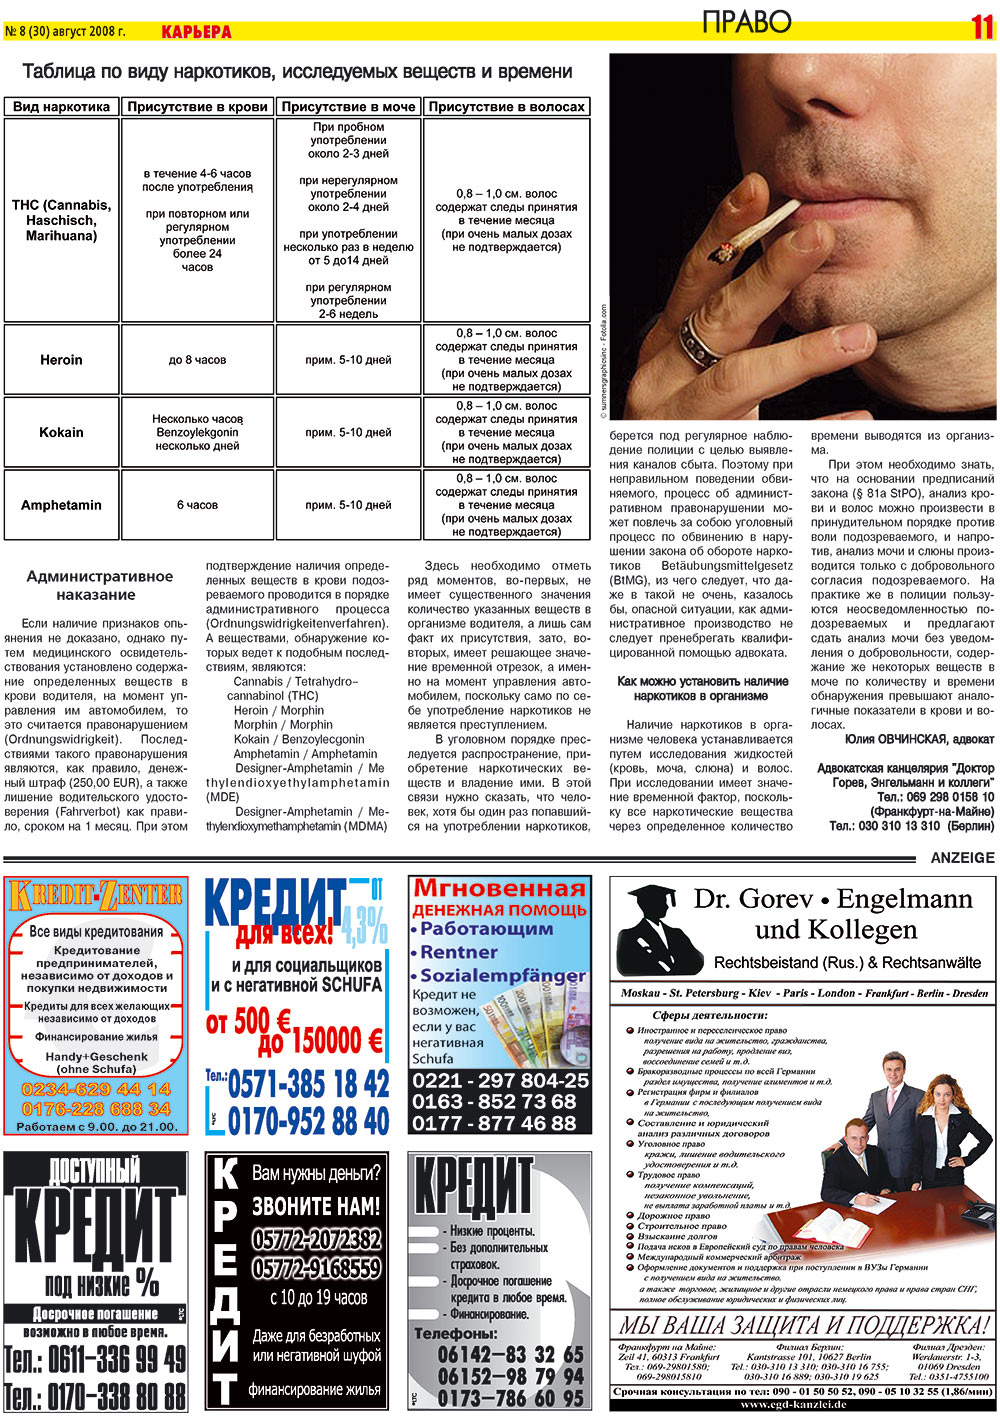 Karriere (Zeitung). 2008 Jahr, Ausgabe 8, Seite 11